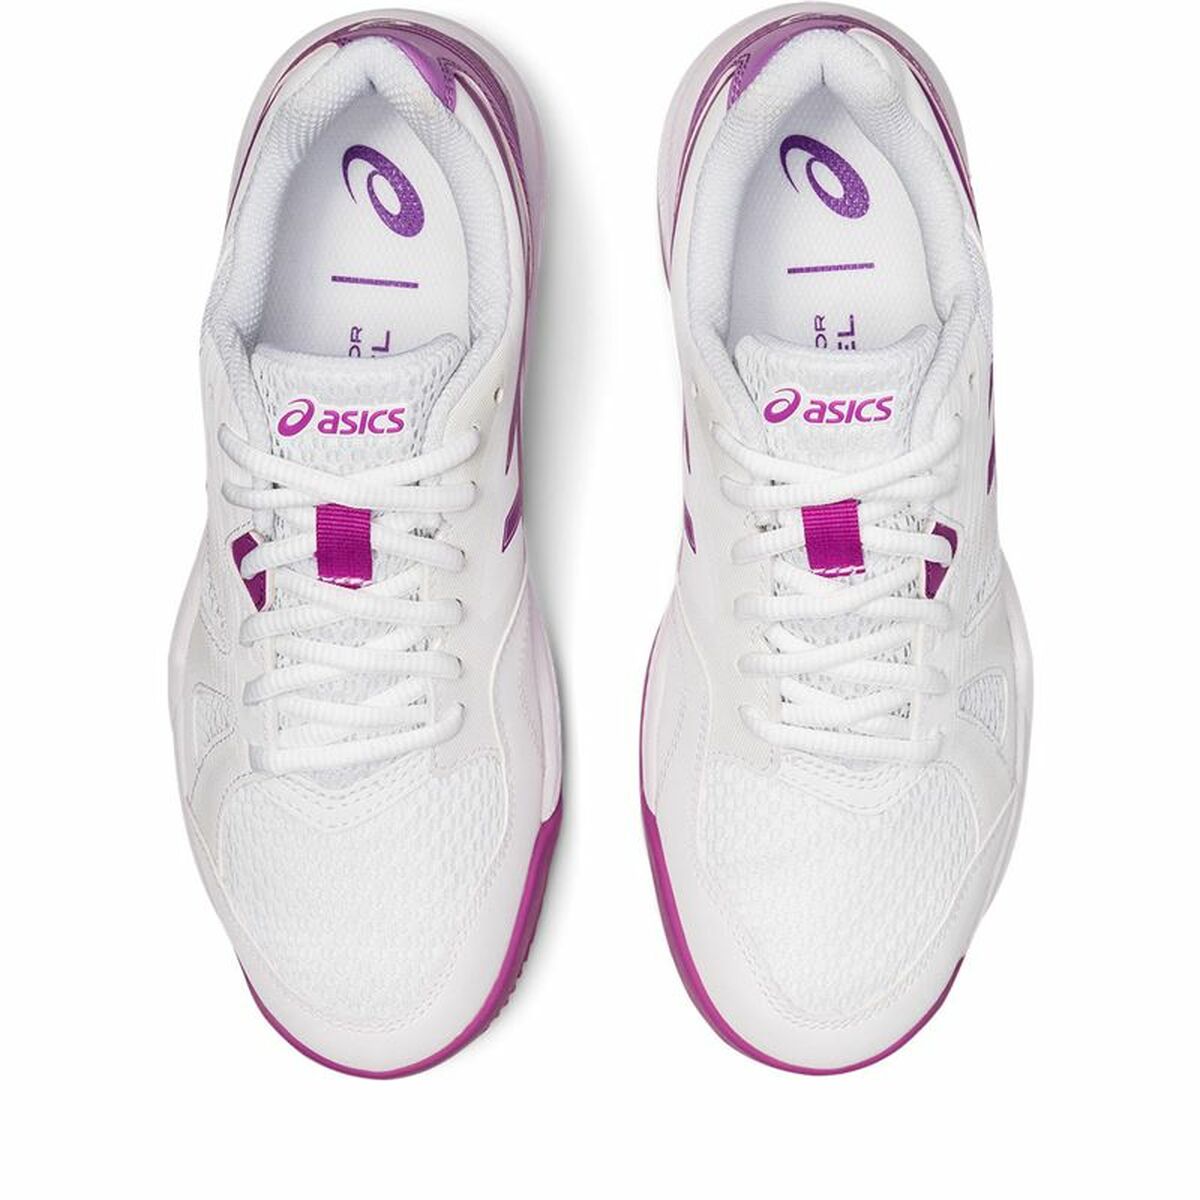 Padel-Sportschuhe für Erwachsene Asics Gel-Padel Pro 5 Damen Pink